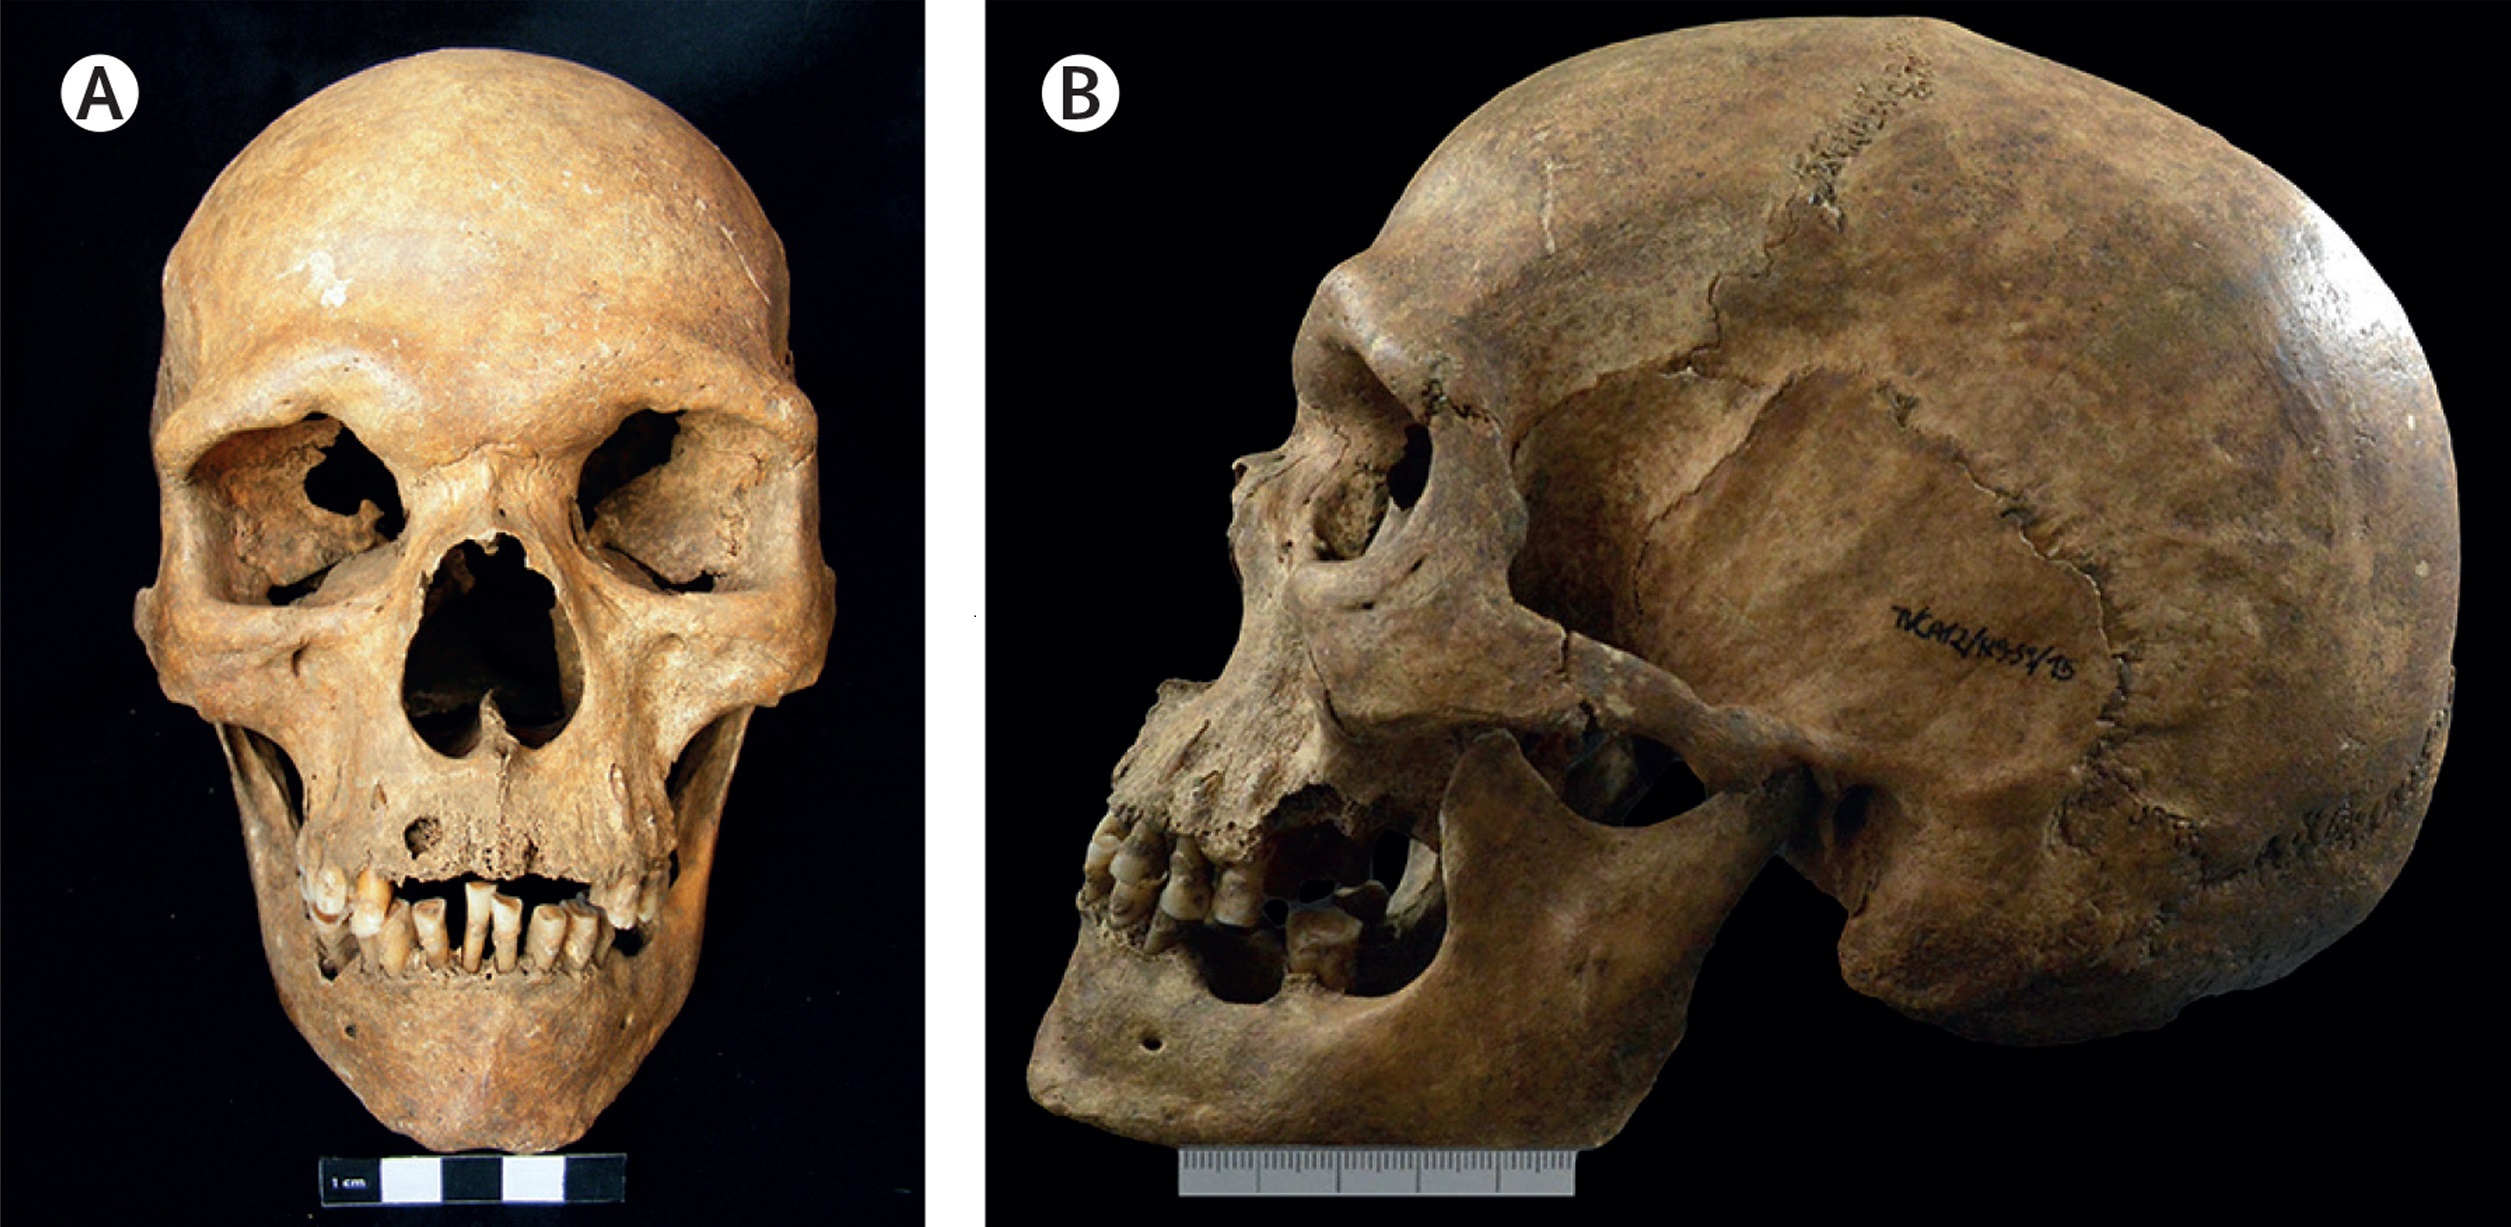 1000 let stará lebka středověkého muže s Klinefelterovým  syndromem - přední (A) a boční (B) pohled odhaluje nesymetrické opotřebení zubů způsobené pravděpodobným křivým růstem stěsnaných a špatně skloněných zubů v důsledku vyčnívající horní čelisti 